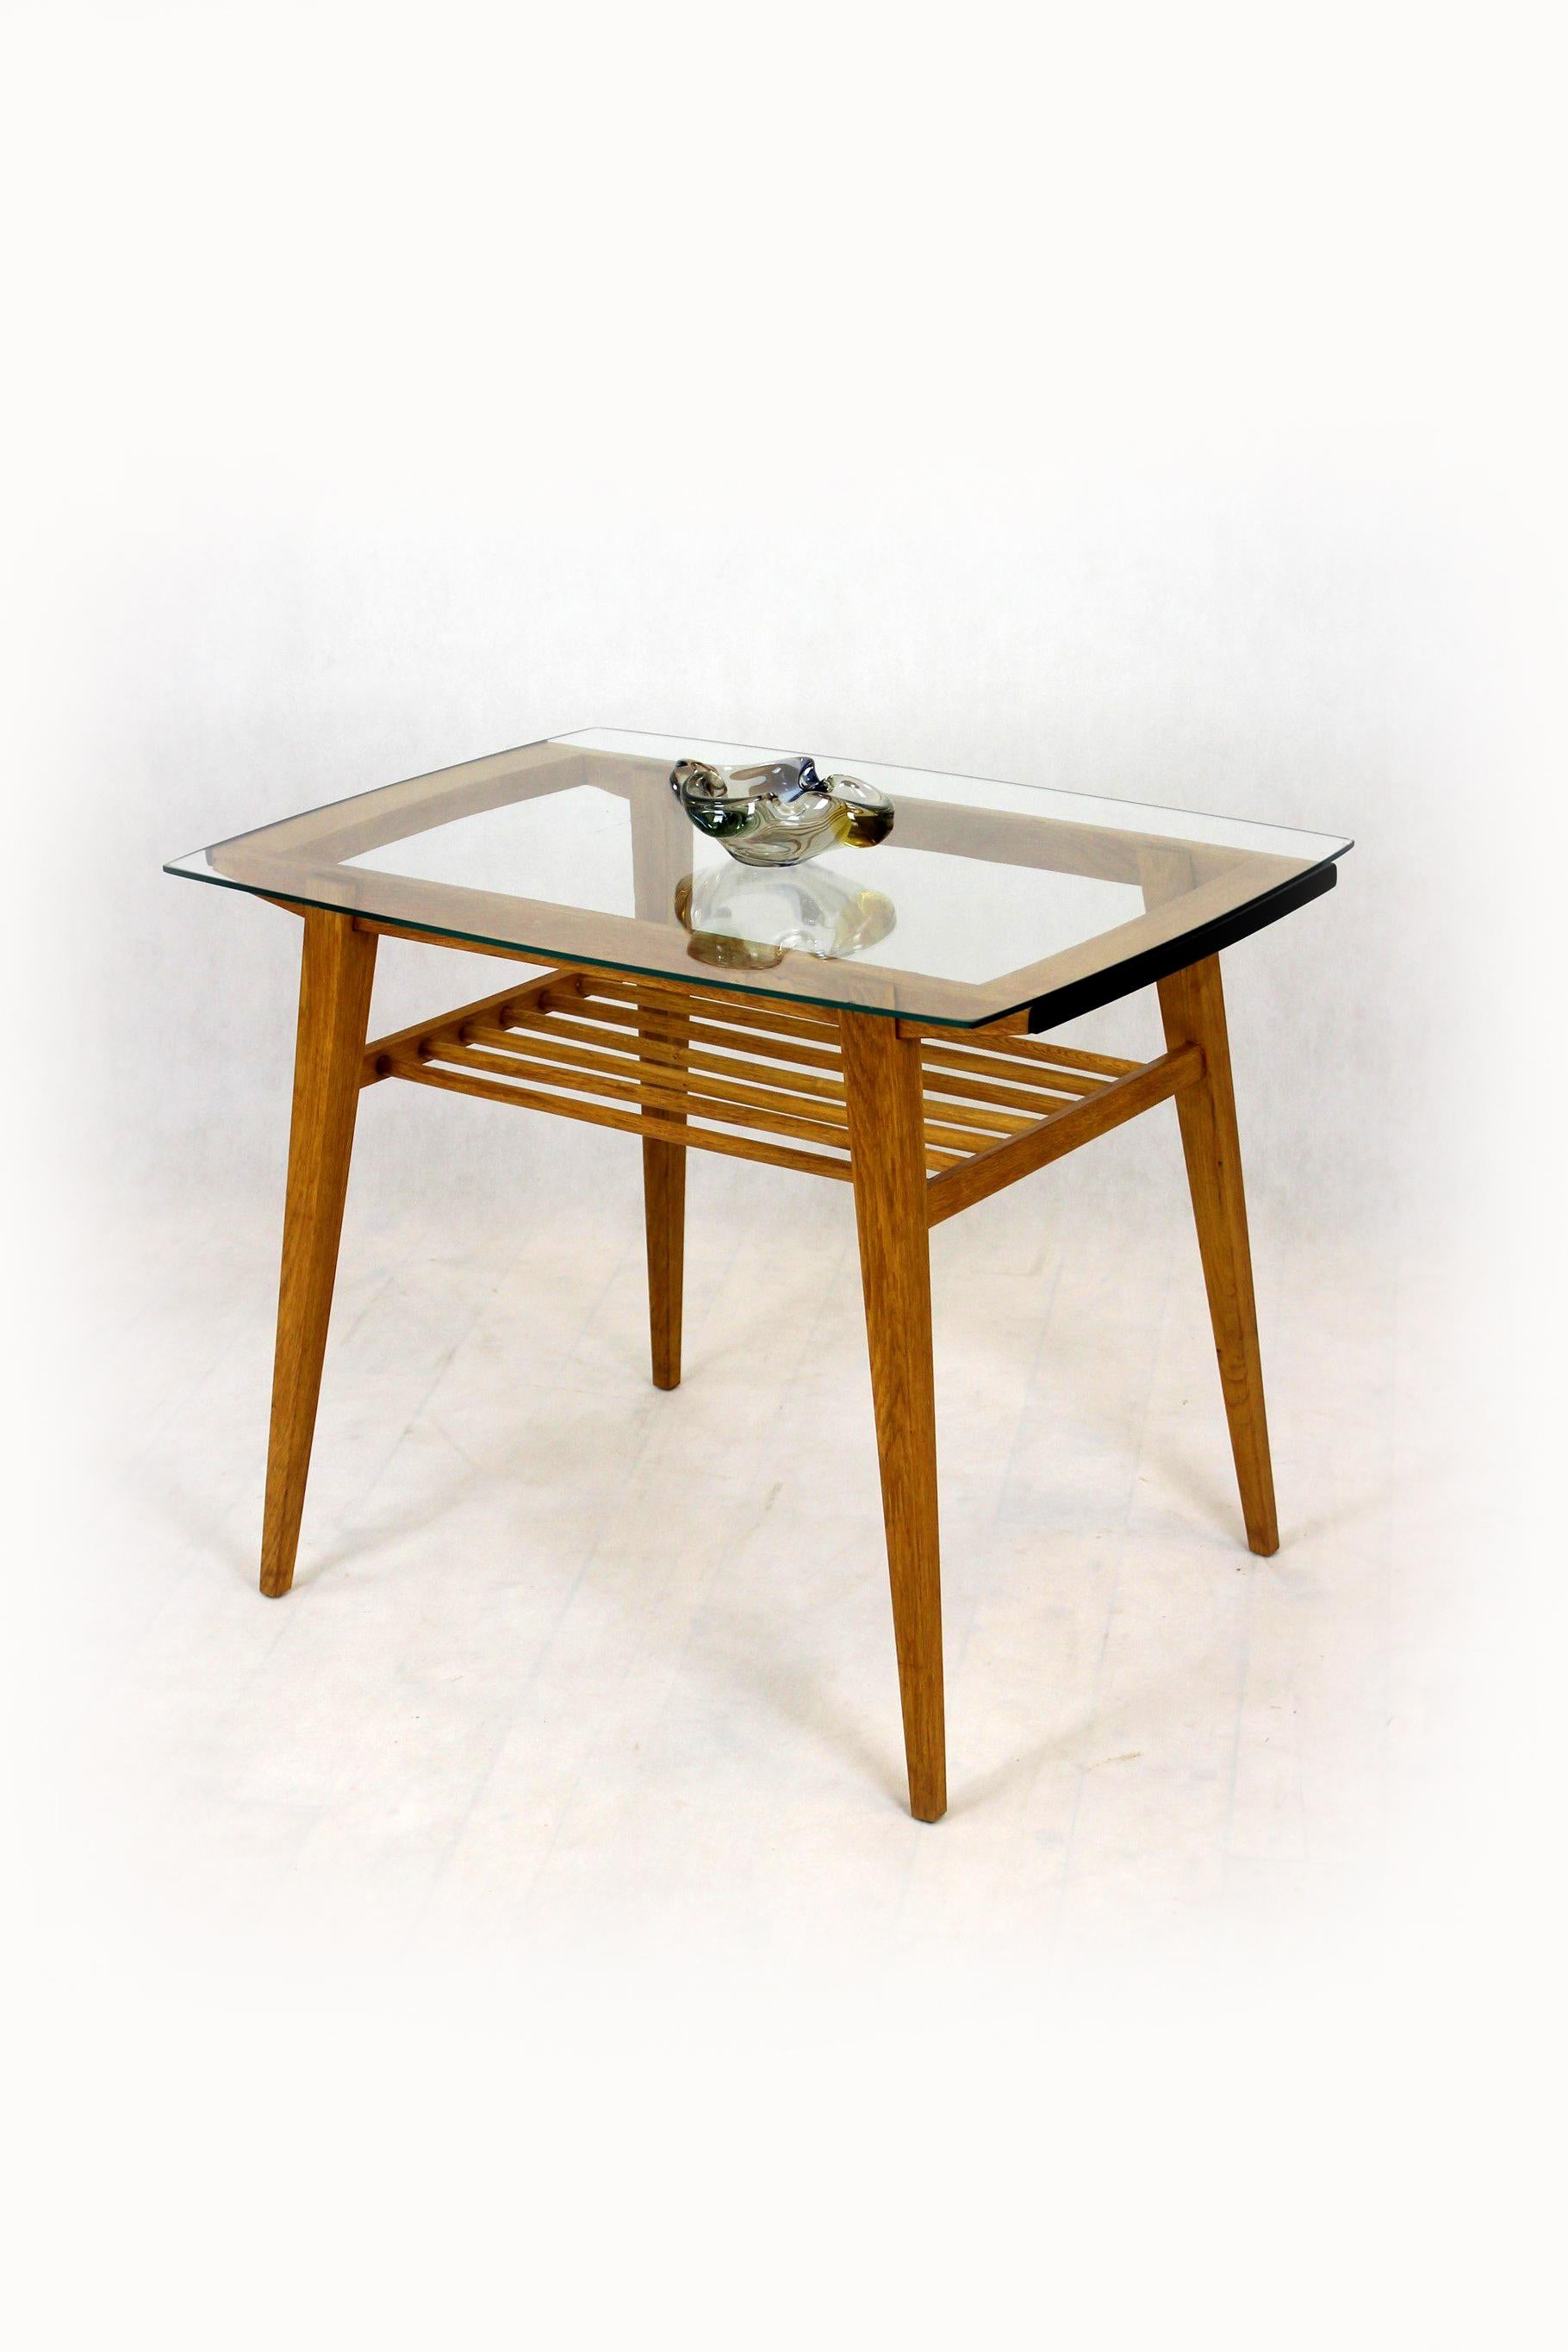 Une table basse unique, une combinaison d'une structure en bois et de verre. Il a été produit par Drevozpracujici Druzstvo dans les années 1960 en Tchécoslovaquie.
La table a été entièrement restaurée, laquée dans une finition satinée. Le verre du